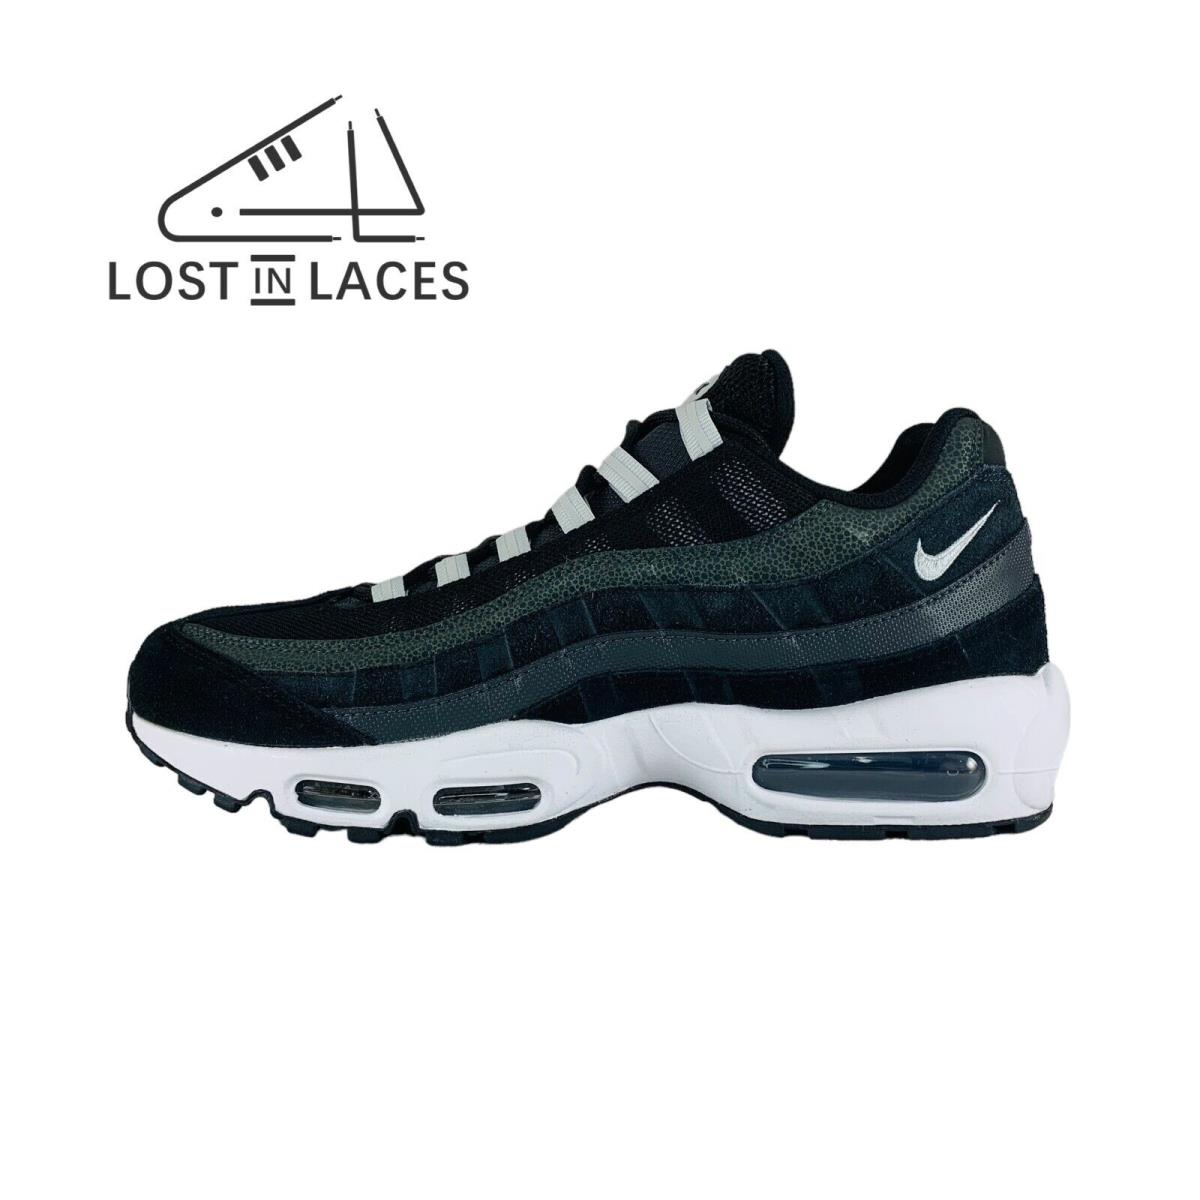 Nike Air Max 95 Black Anthracite Safari Sneakers Men`s Shoes DM0011-009